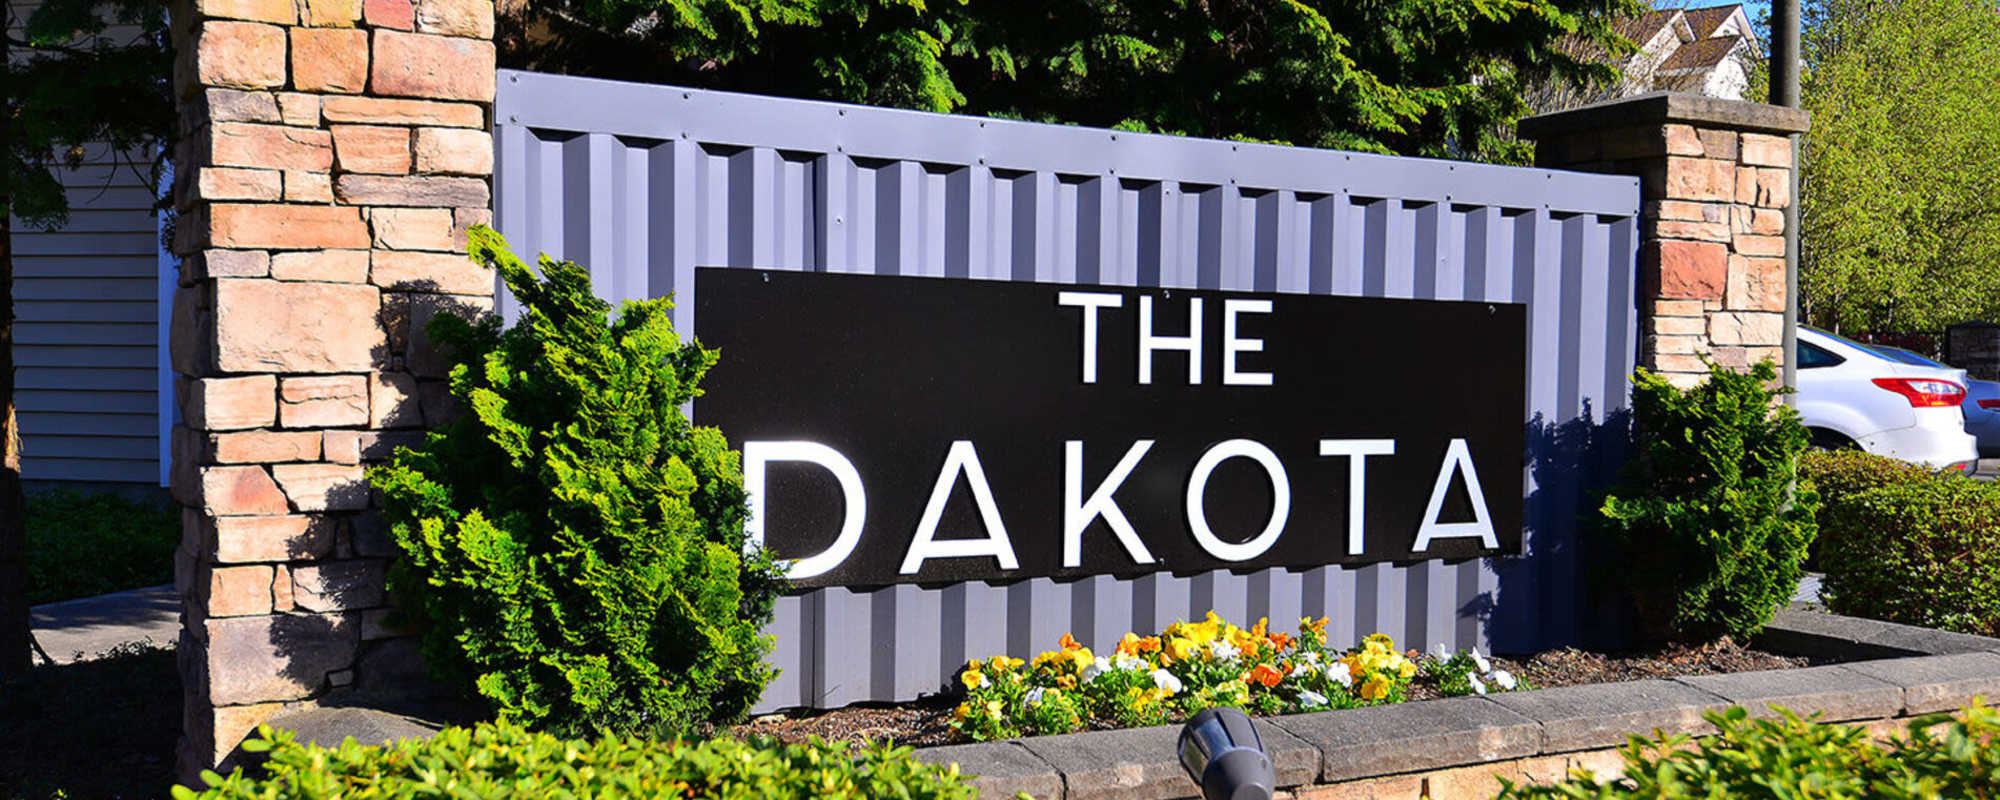 The Dakota in Lacey, Washington